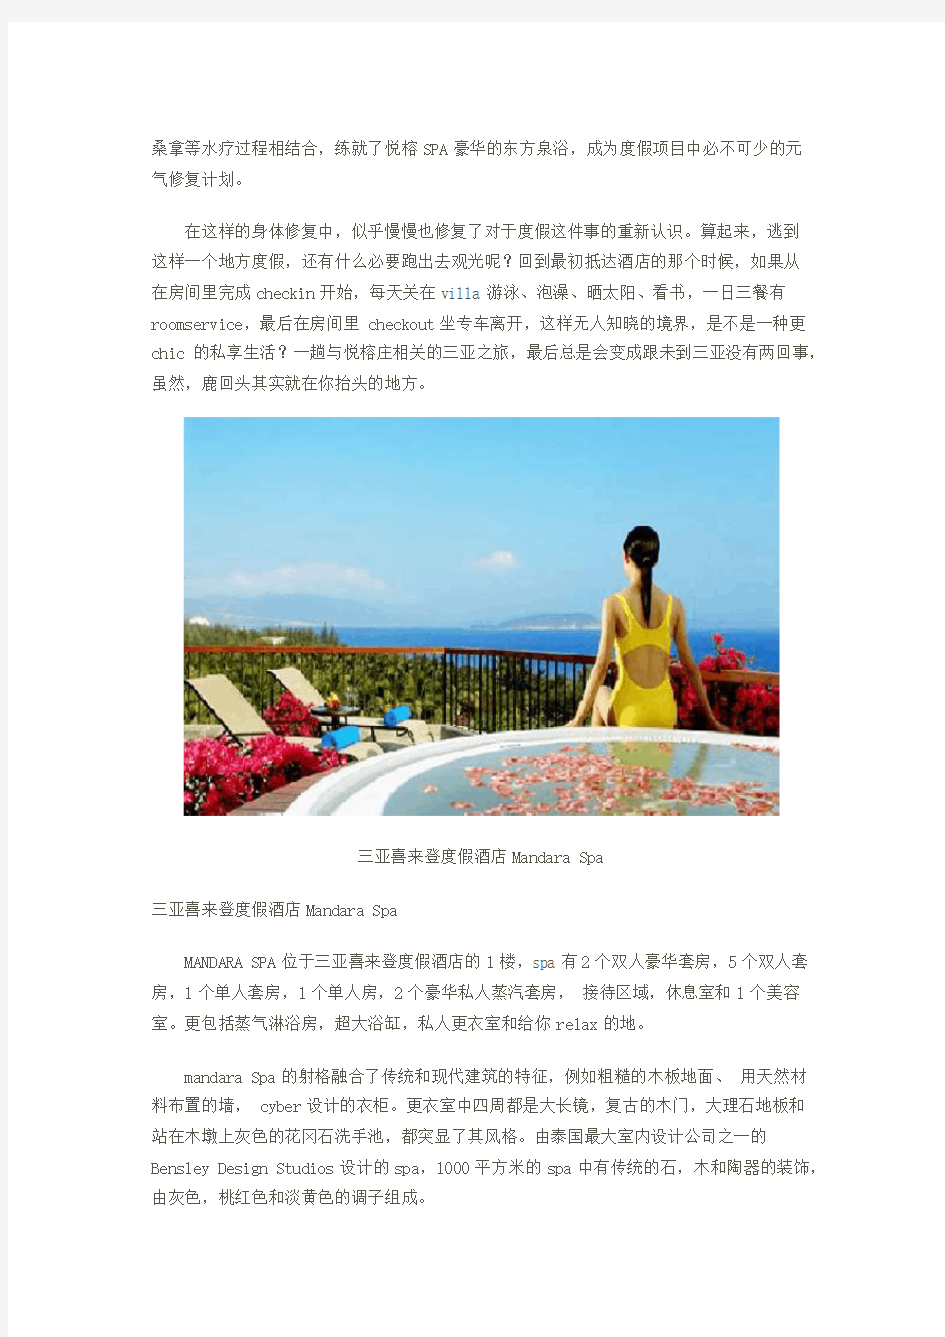 世界级的水疗世界级美景 三亚高星级酒店推荐